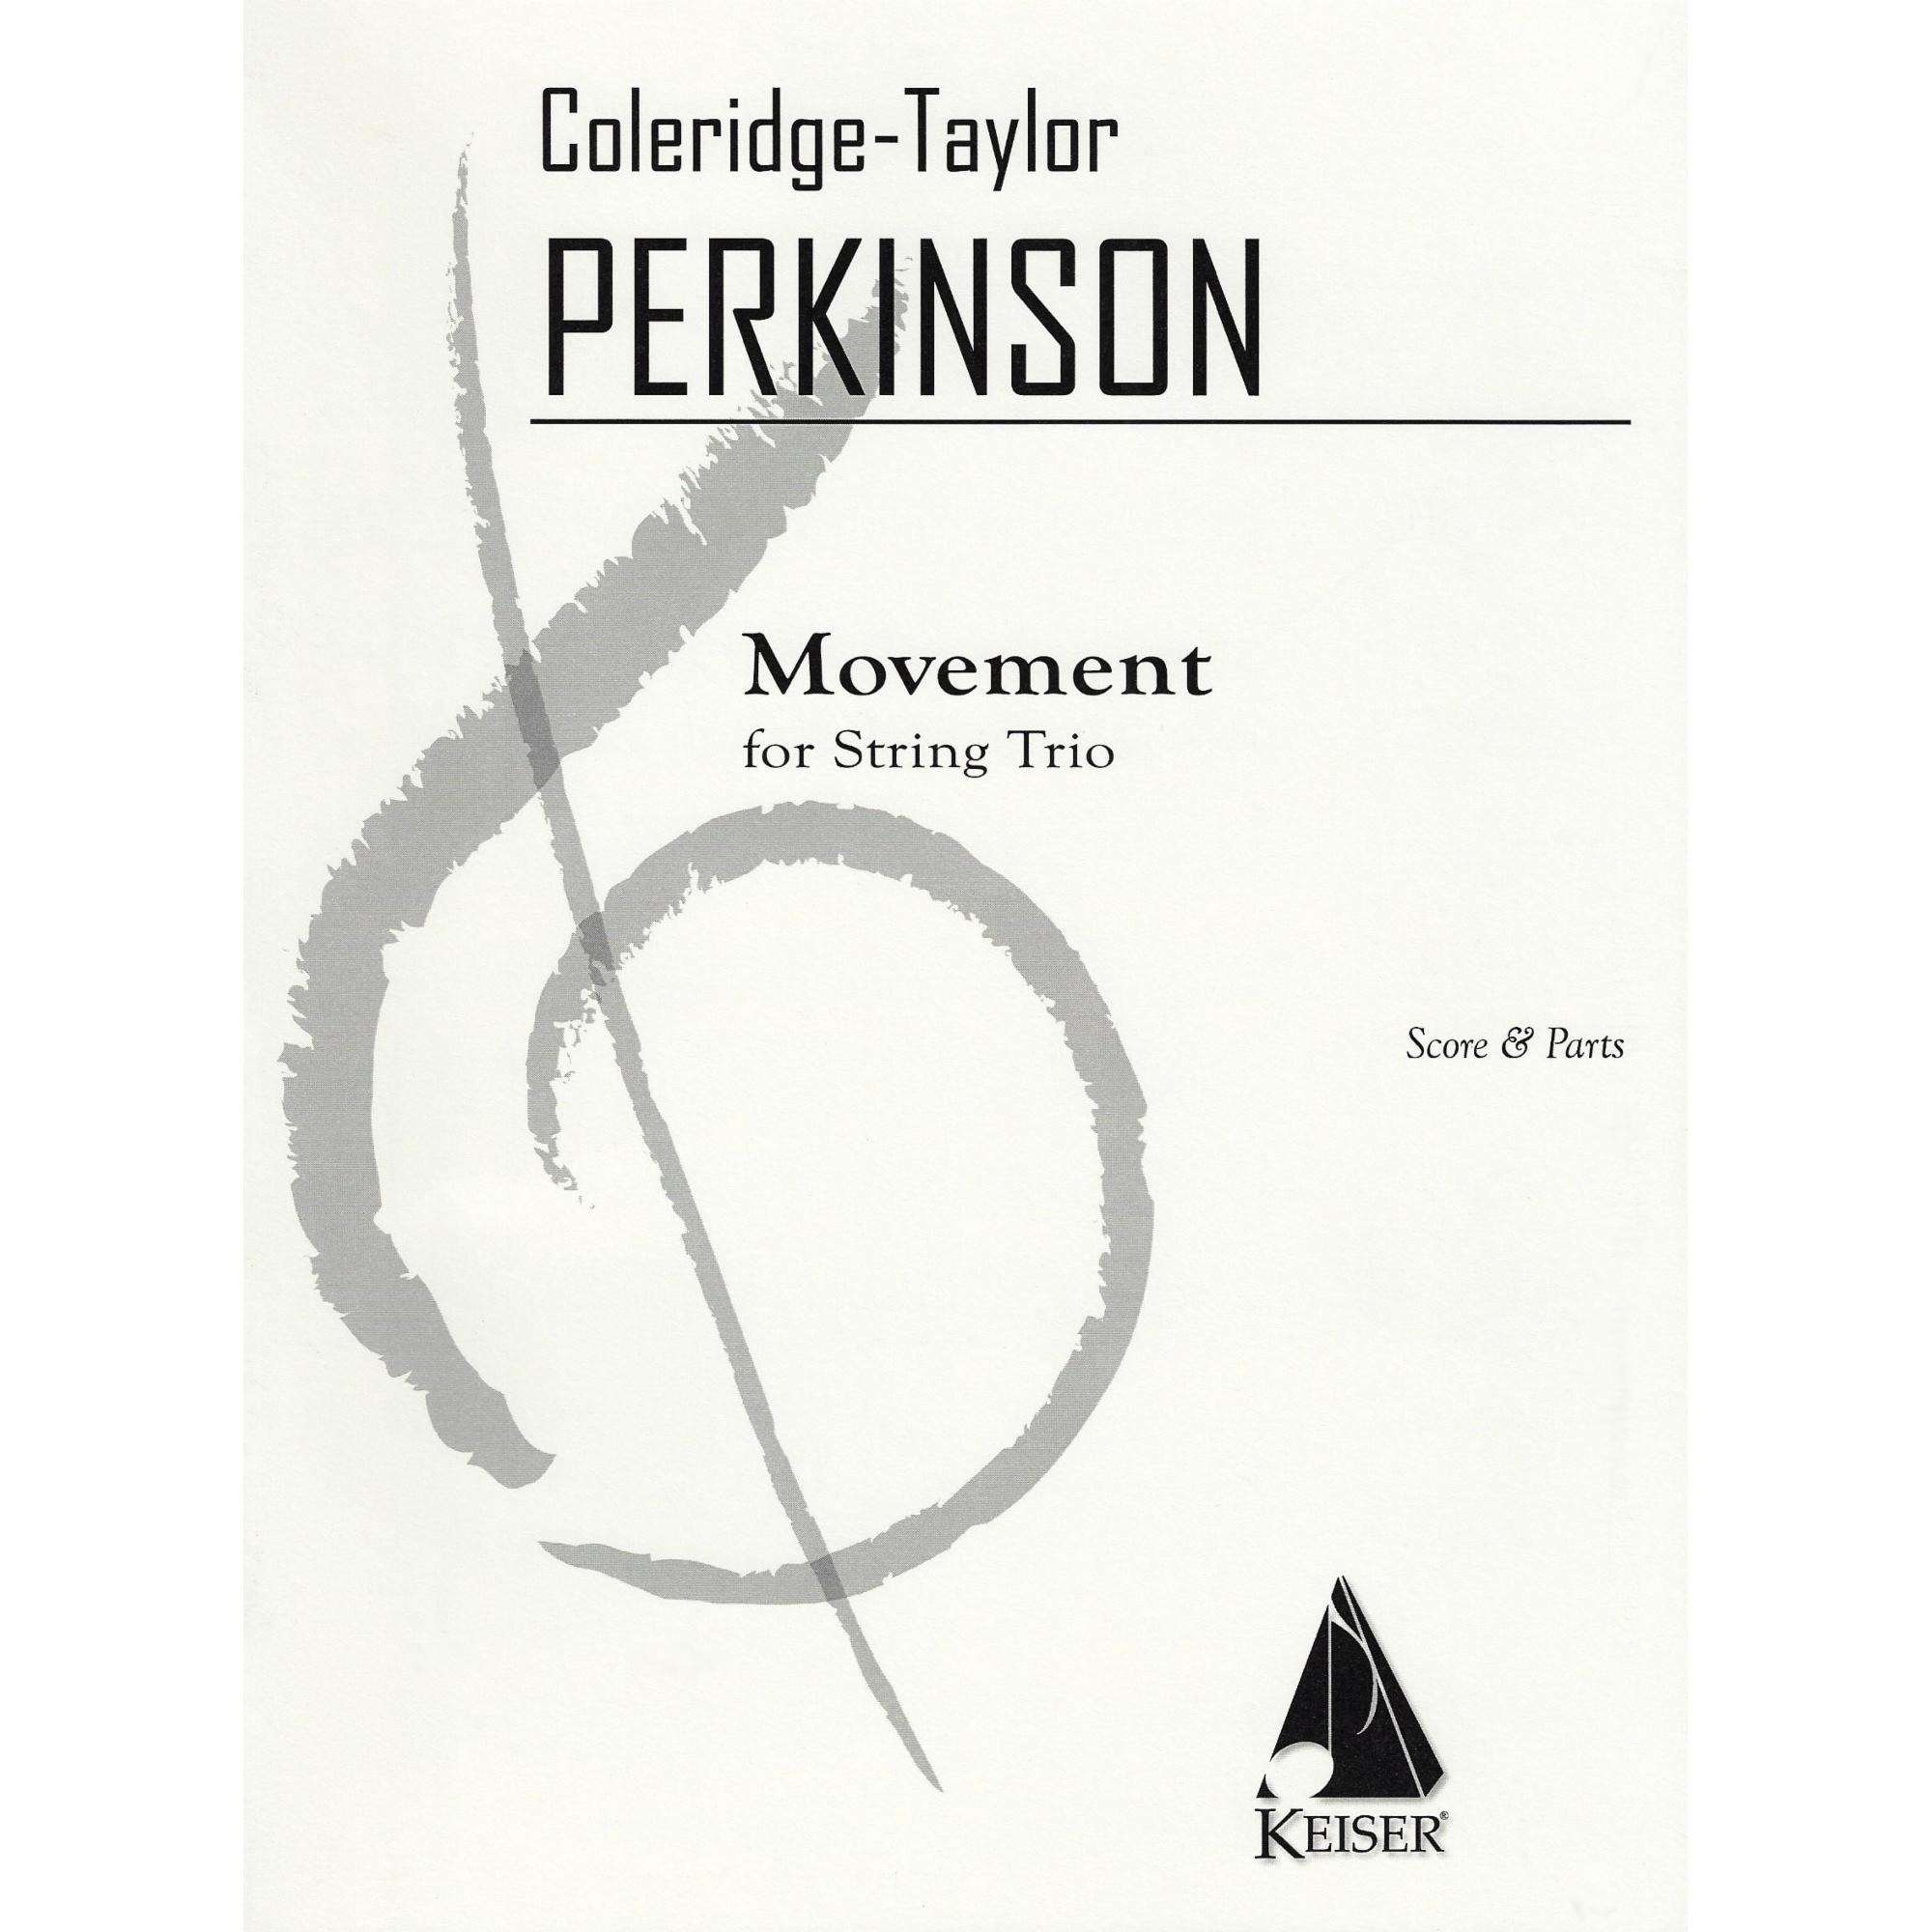 Perkinson -- Movement for String Trio